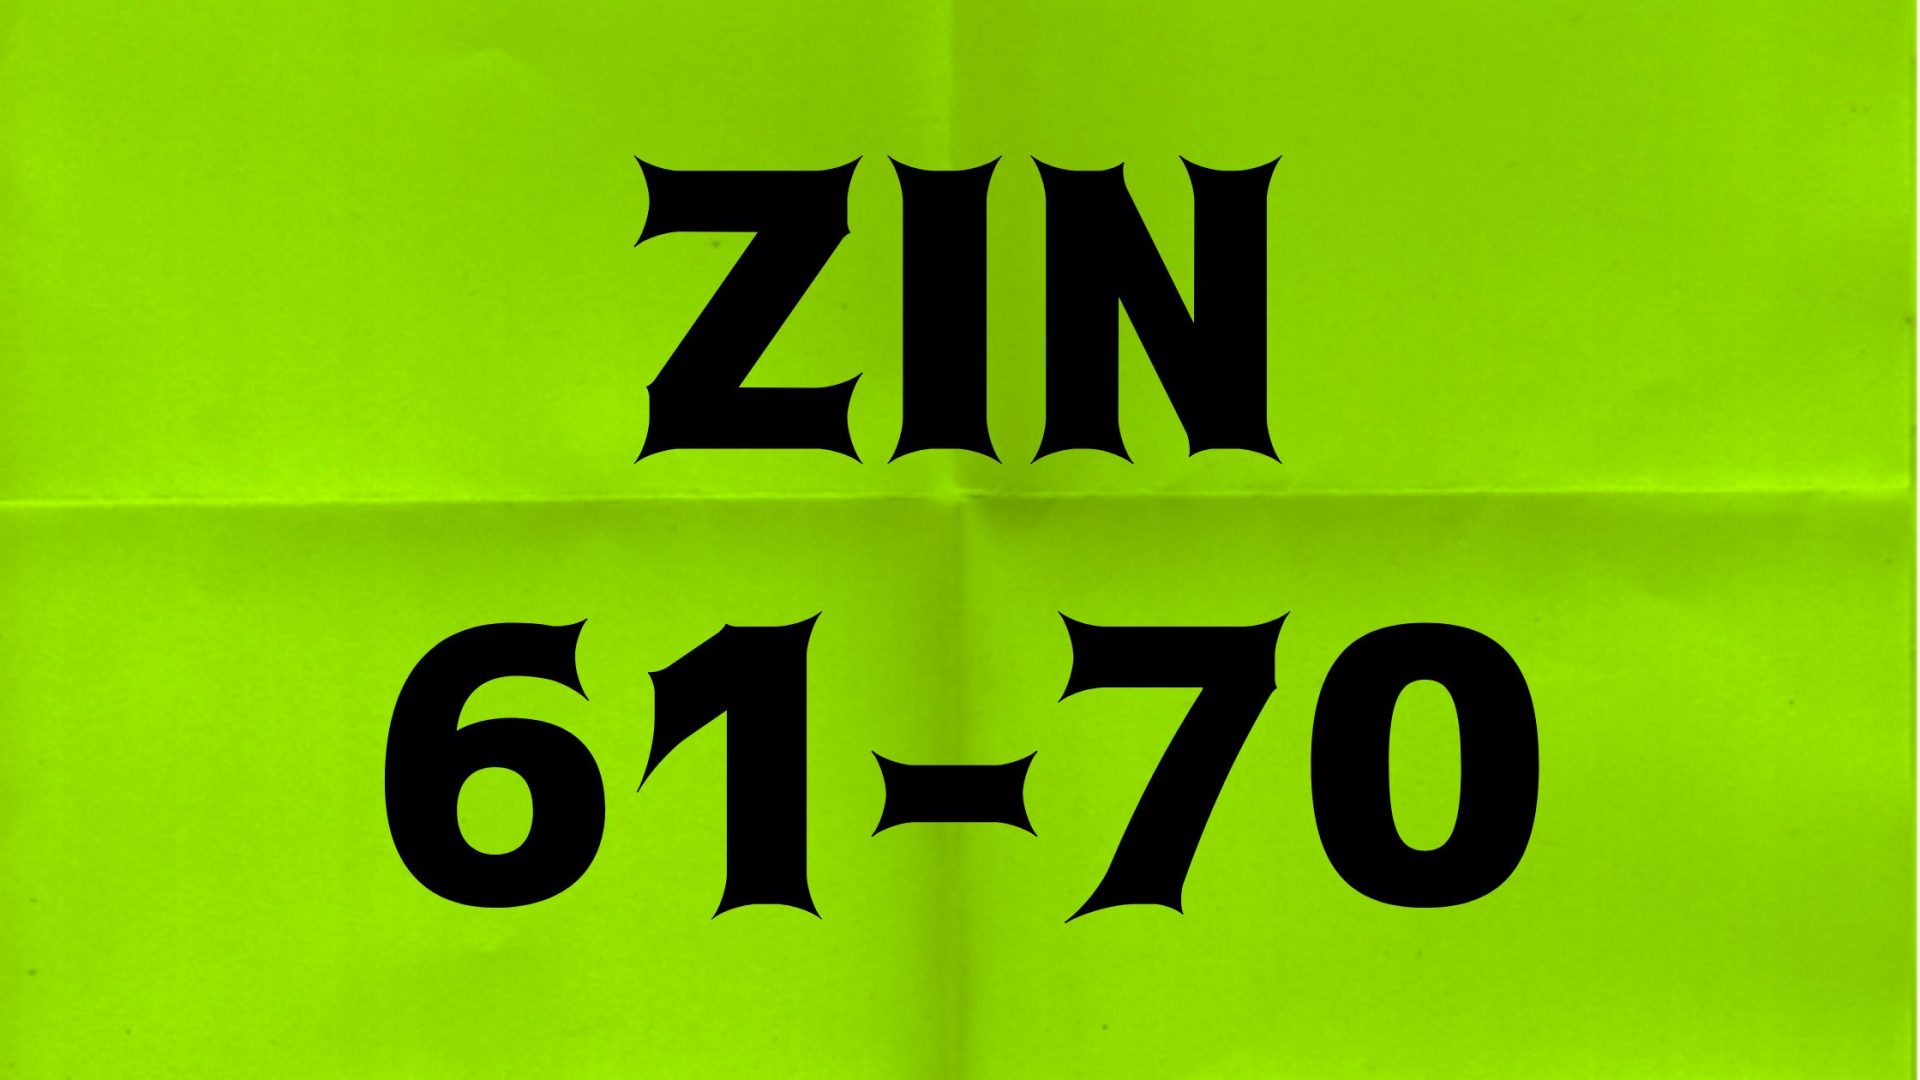 ZIN 61-70